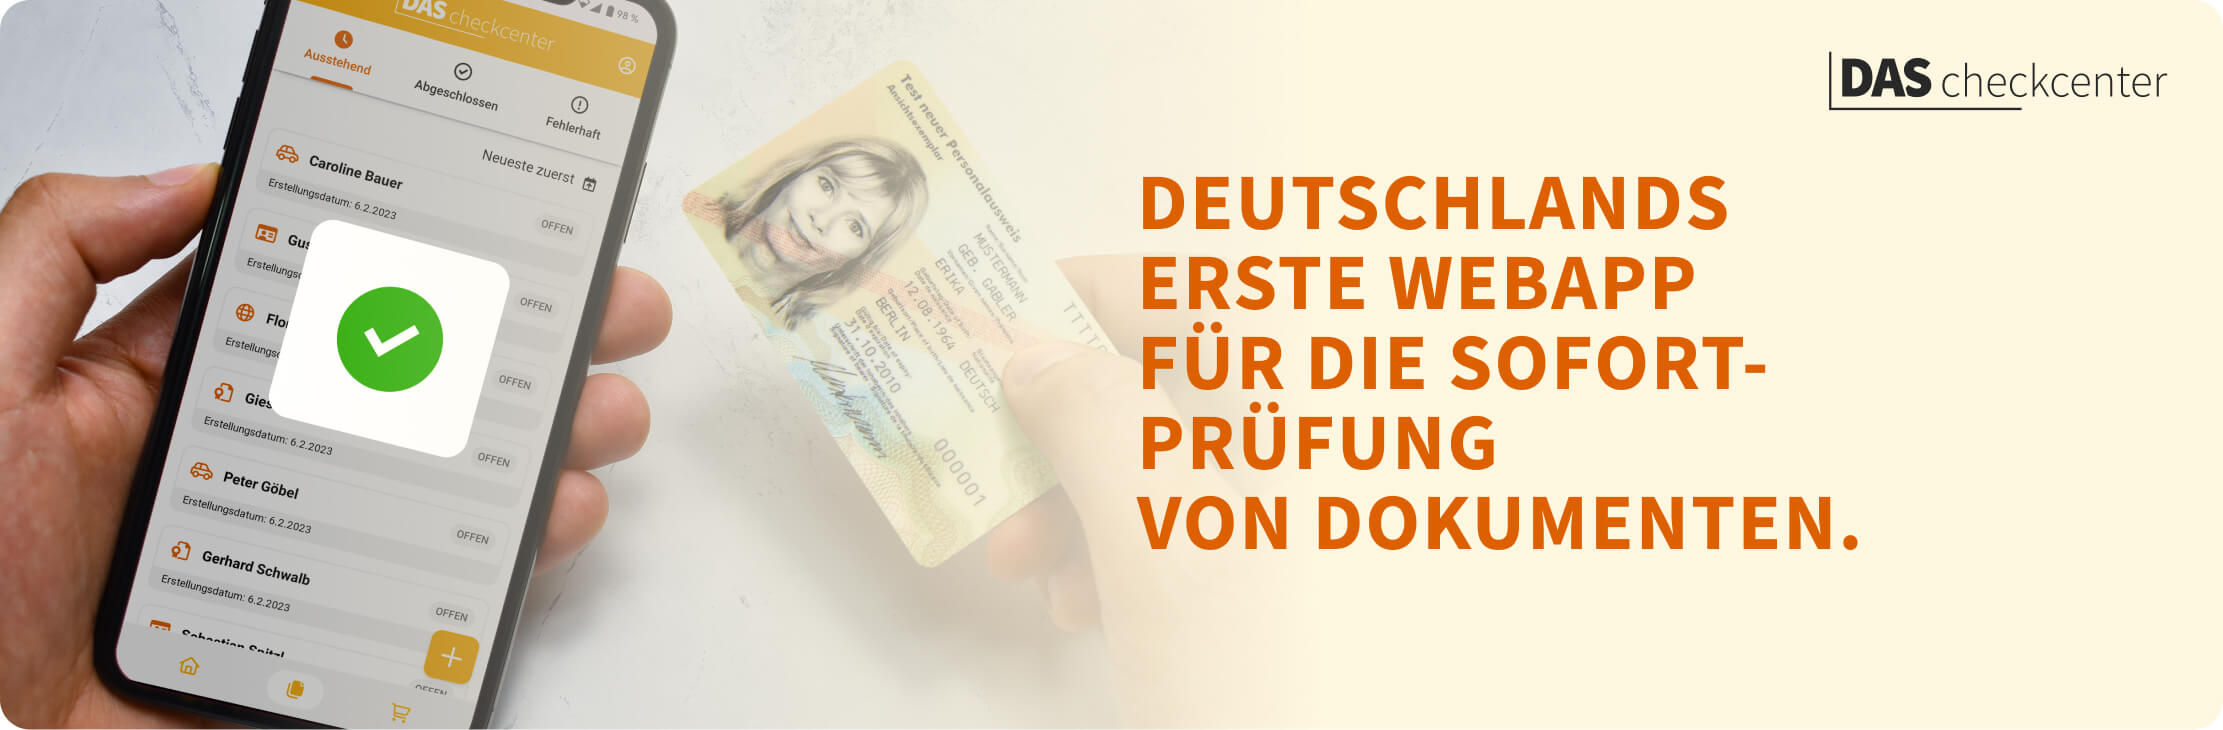 Deutschlands erste Webapp für die Sofortprüfung von Dokumenten.